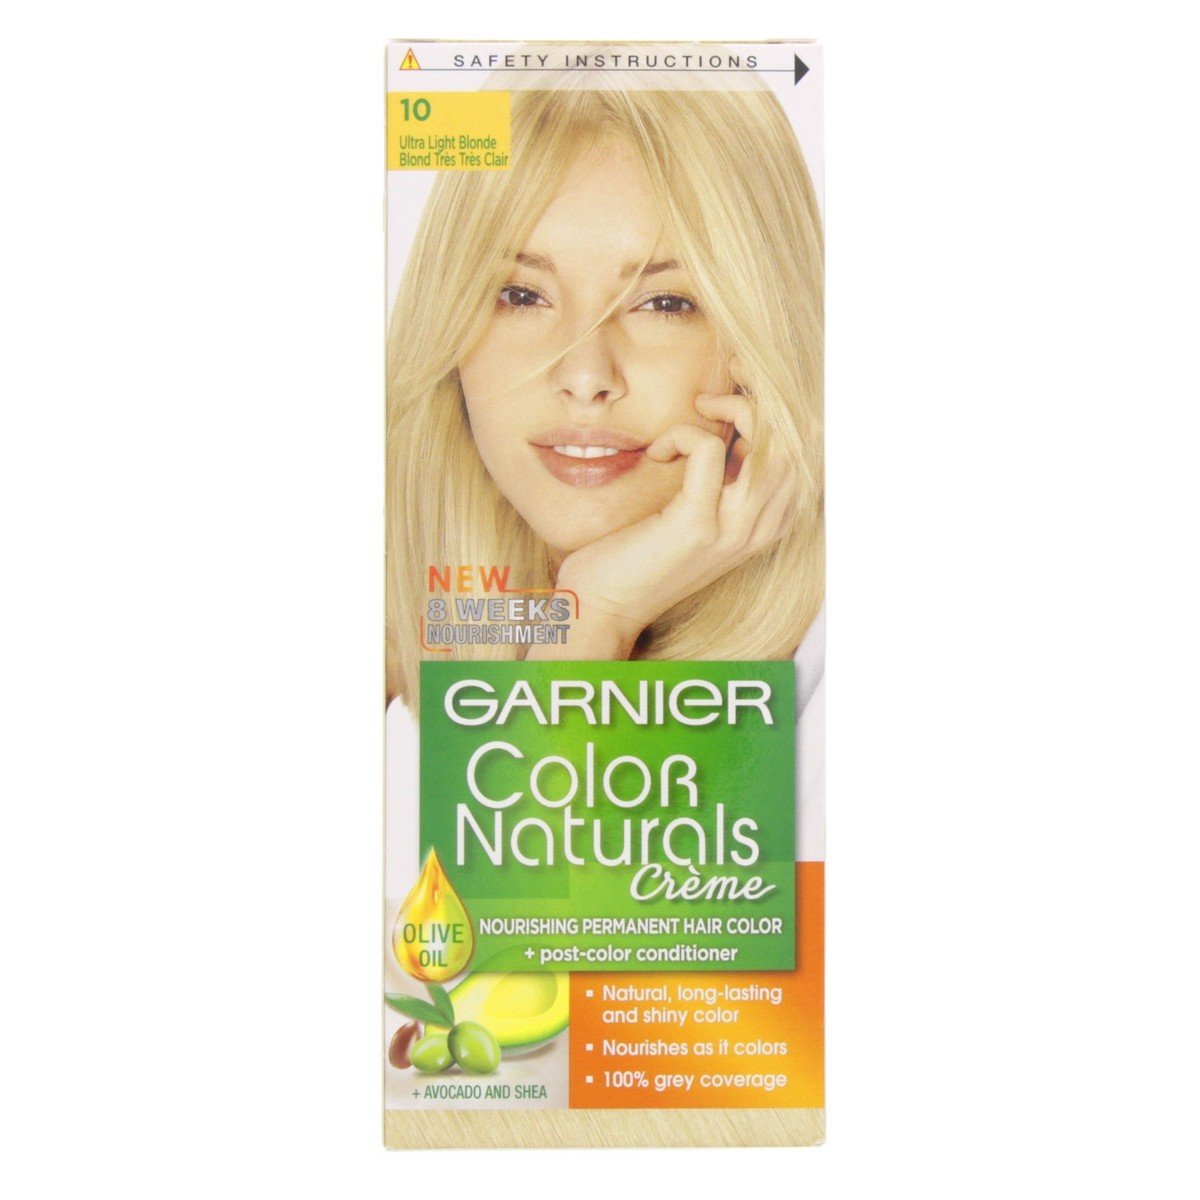 Garnier Colour Naturals 10 Ultra Light Blonde 1 pkt